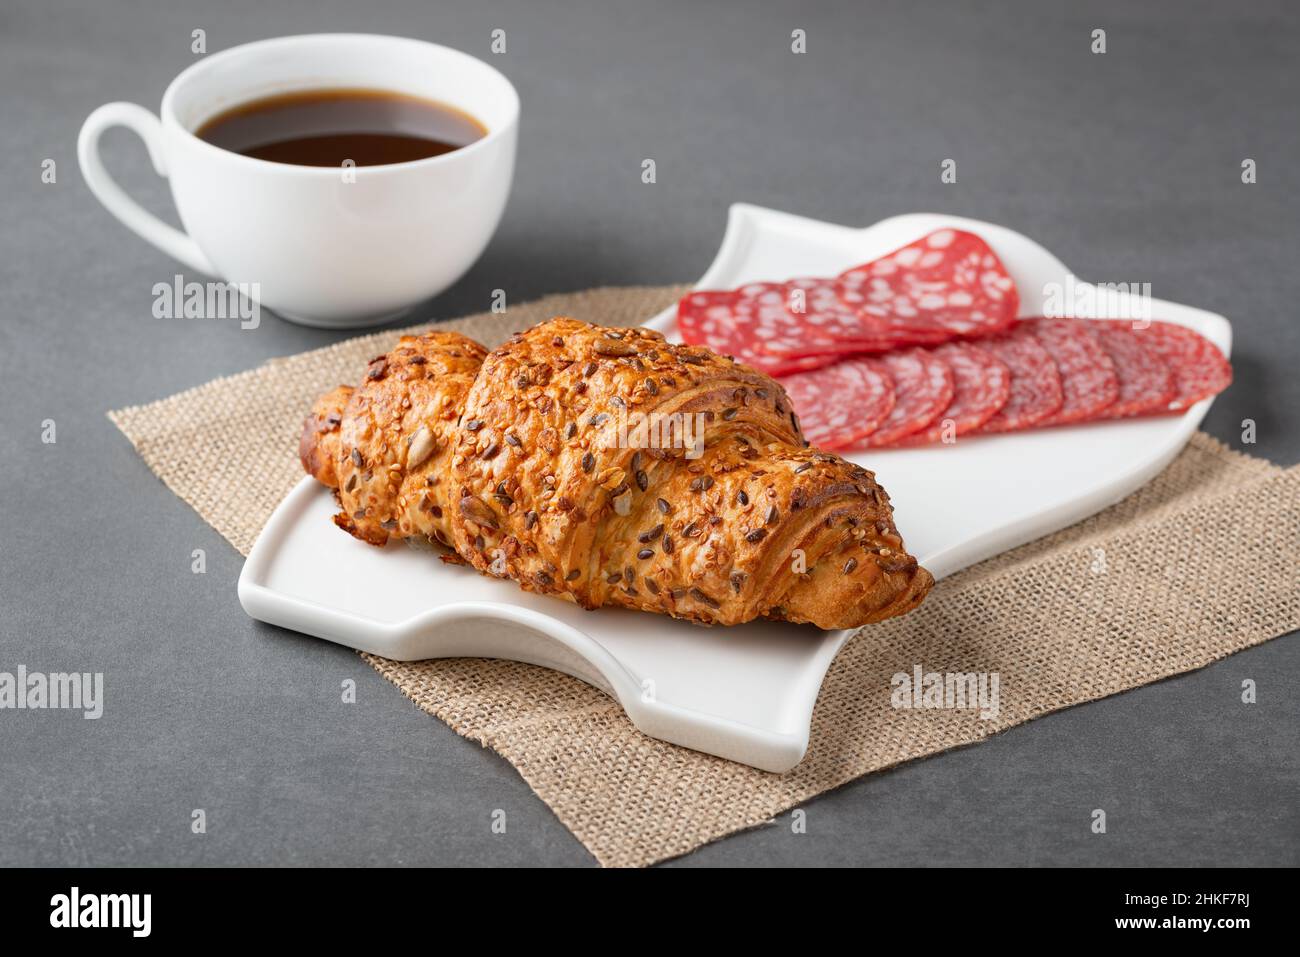 Frisches Croissant-Sandwich mit Wurst und Kaffee auf grauem Tisch Stockfoto